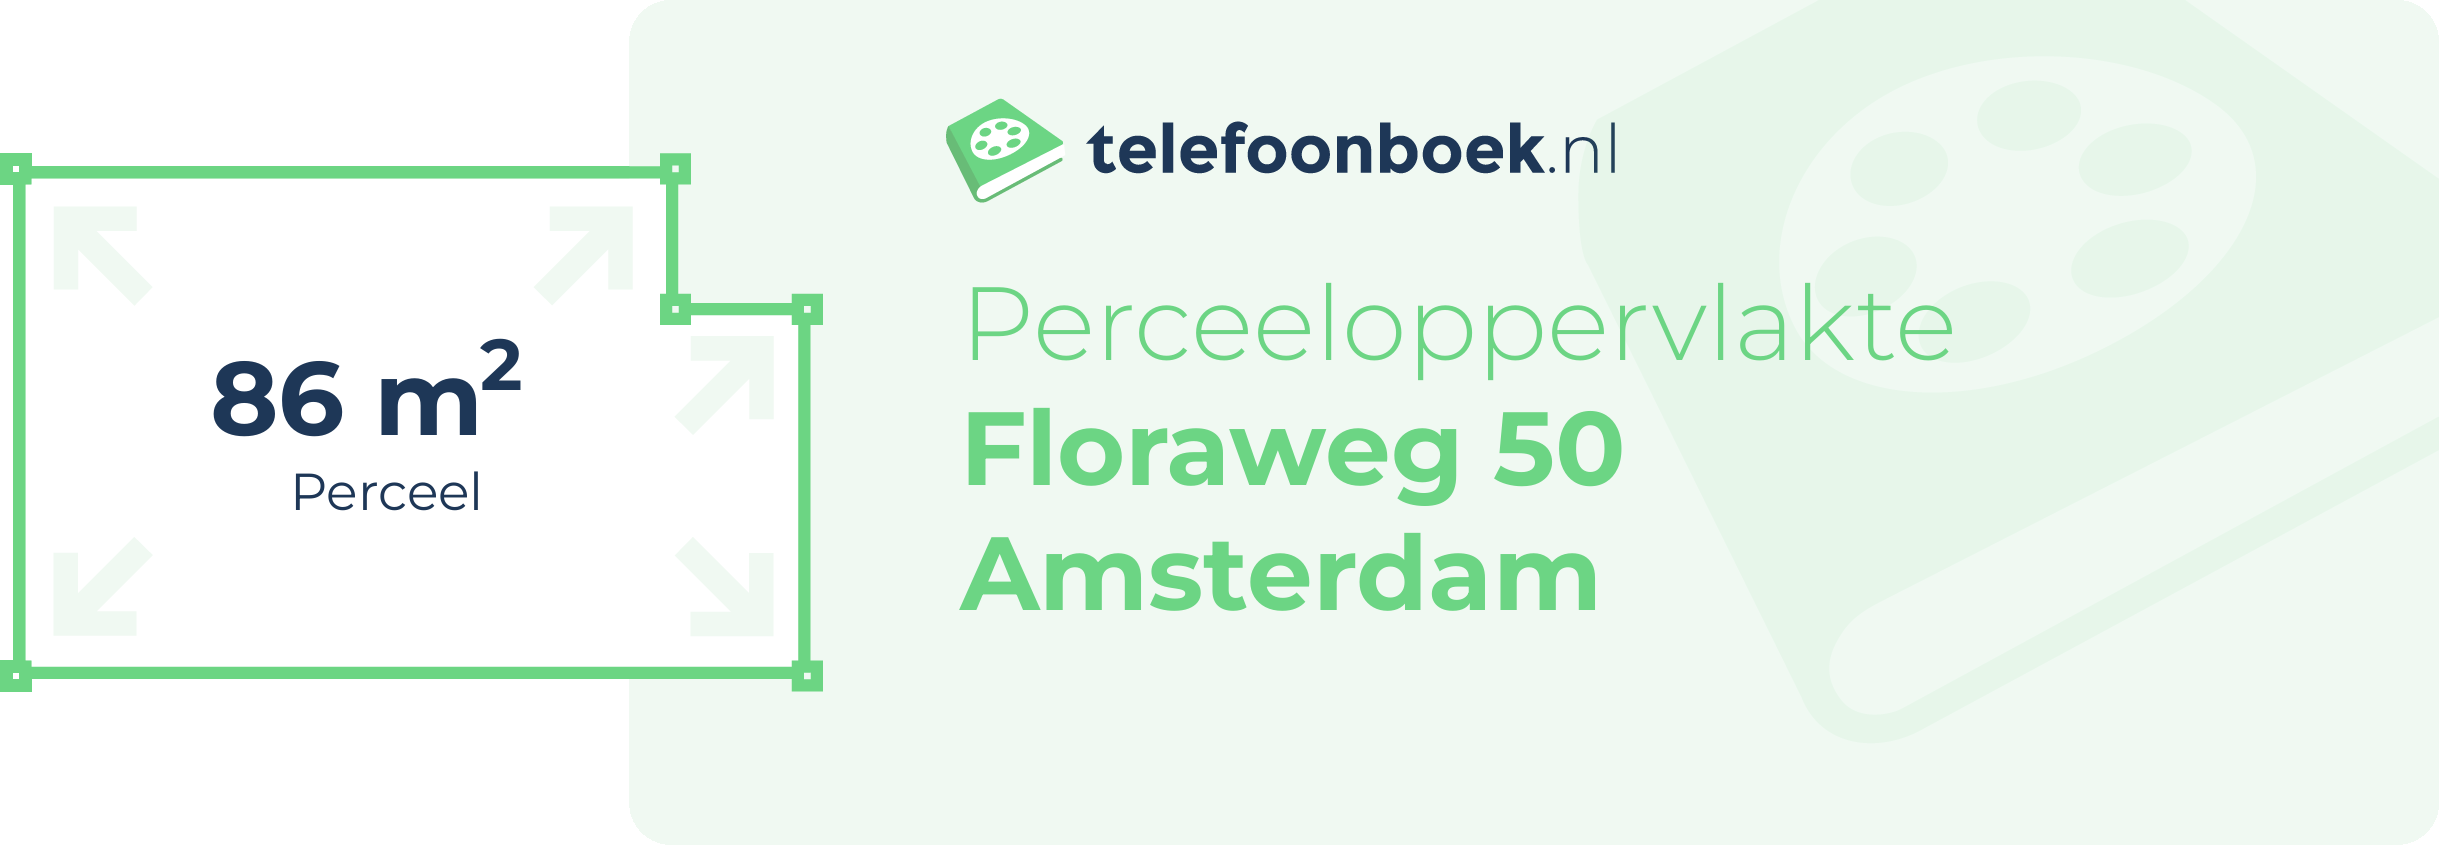 Perceeloppervlakte Floraweg 50 Amsterdam